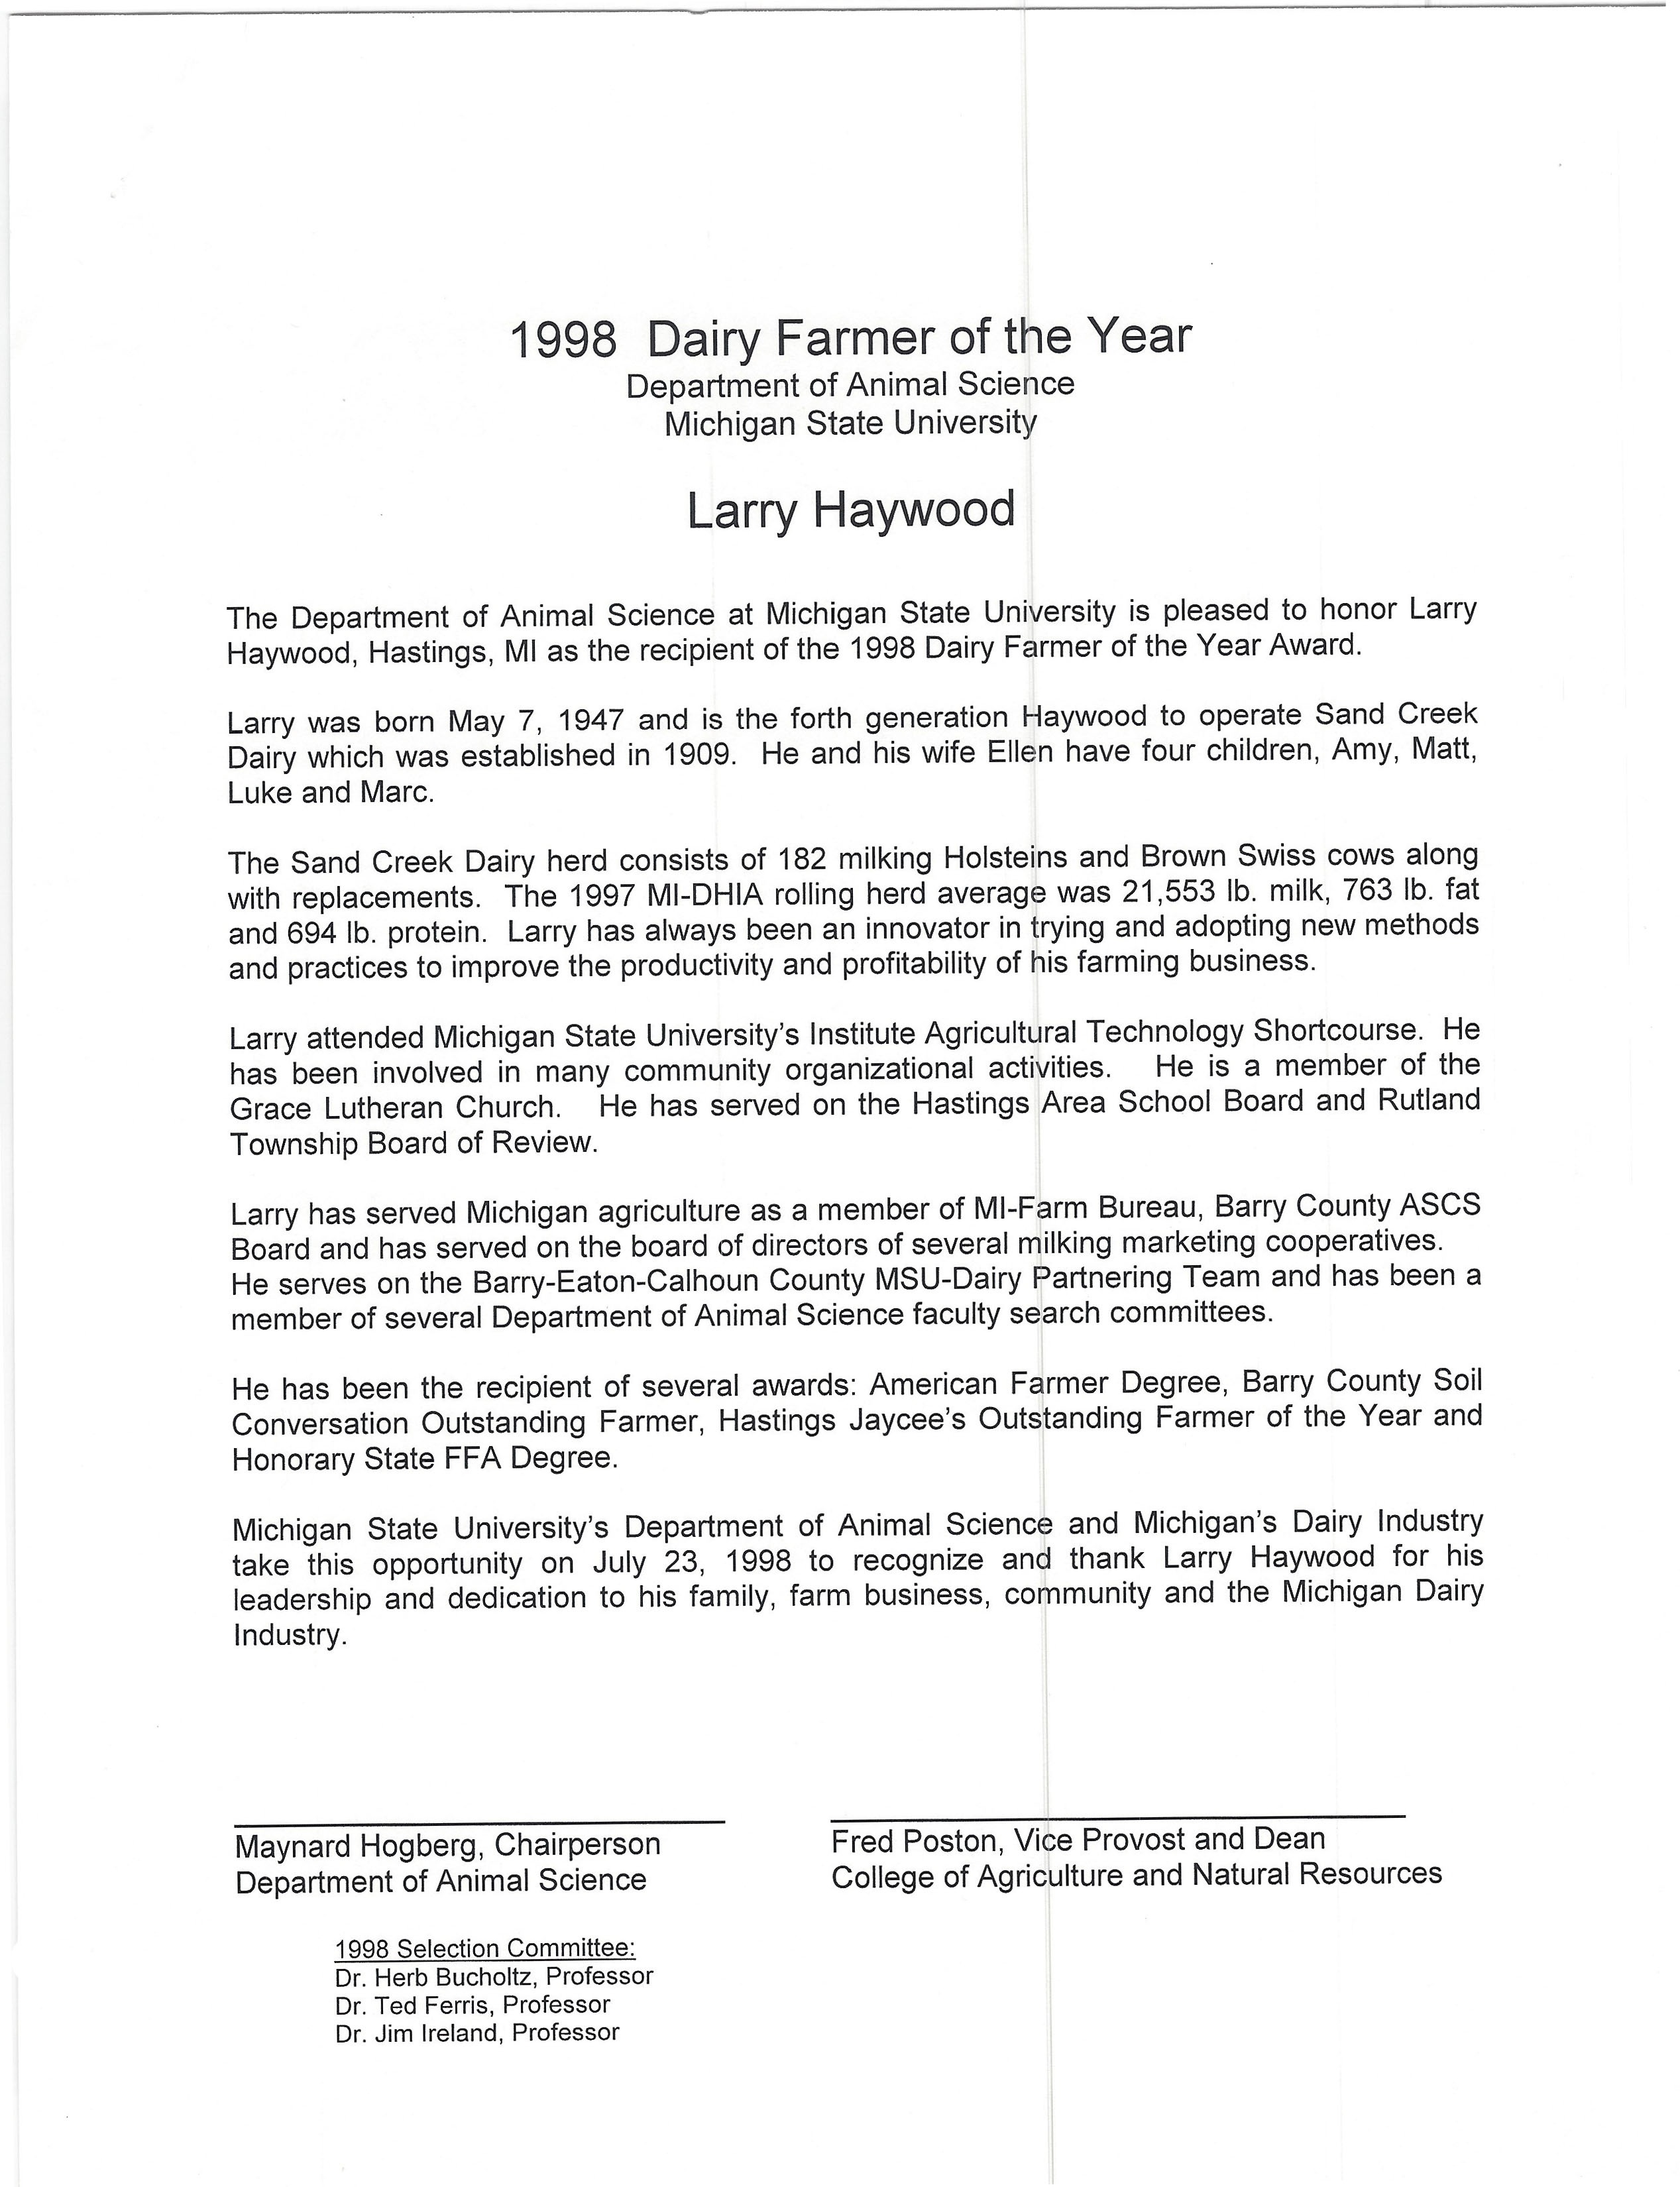 1998 Larry Haywood